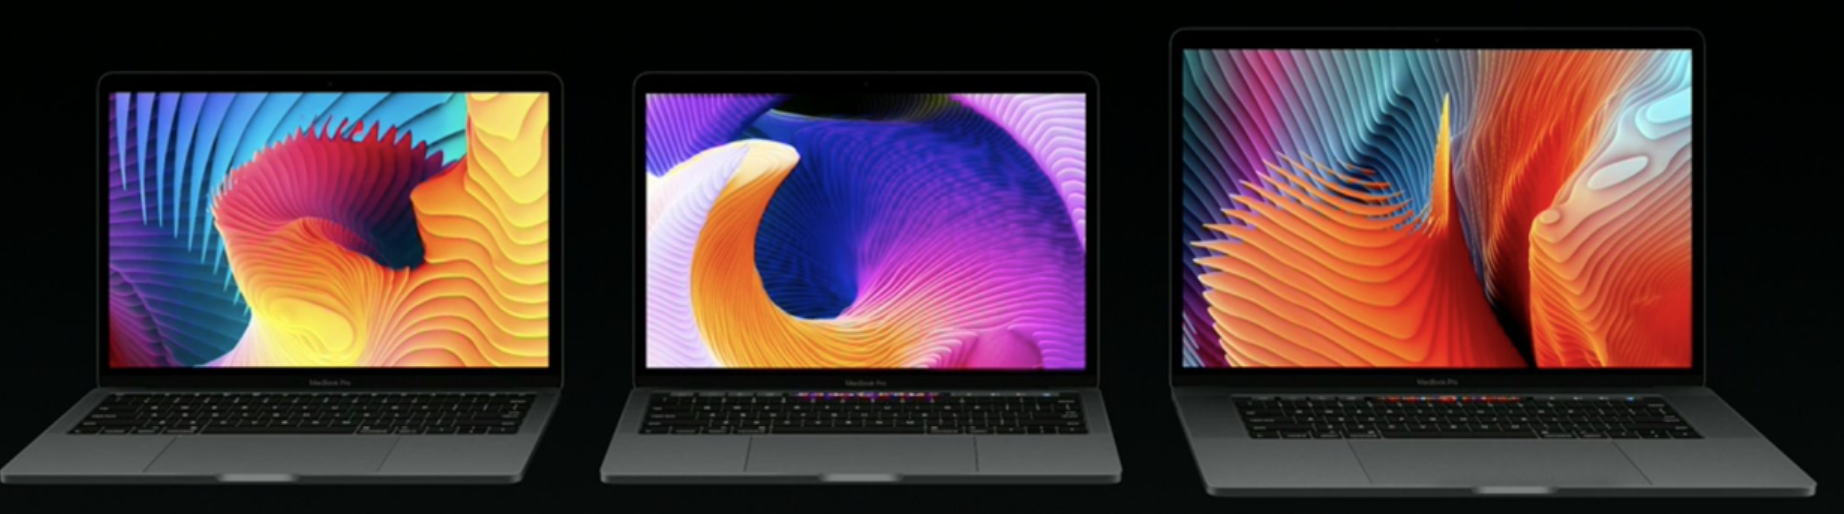 macbook pro wallpaper,laptop,bildschirm,ausgabegerät,technologie,anzeigegerät